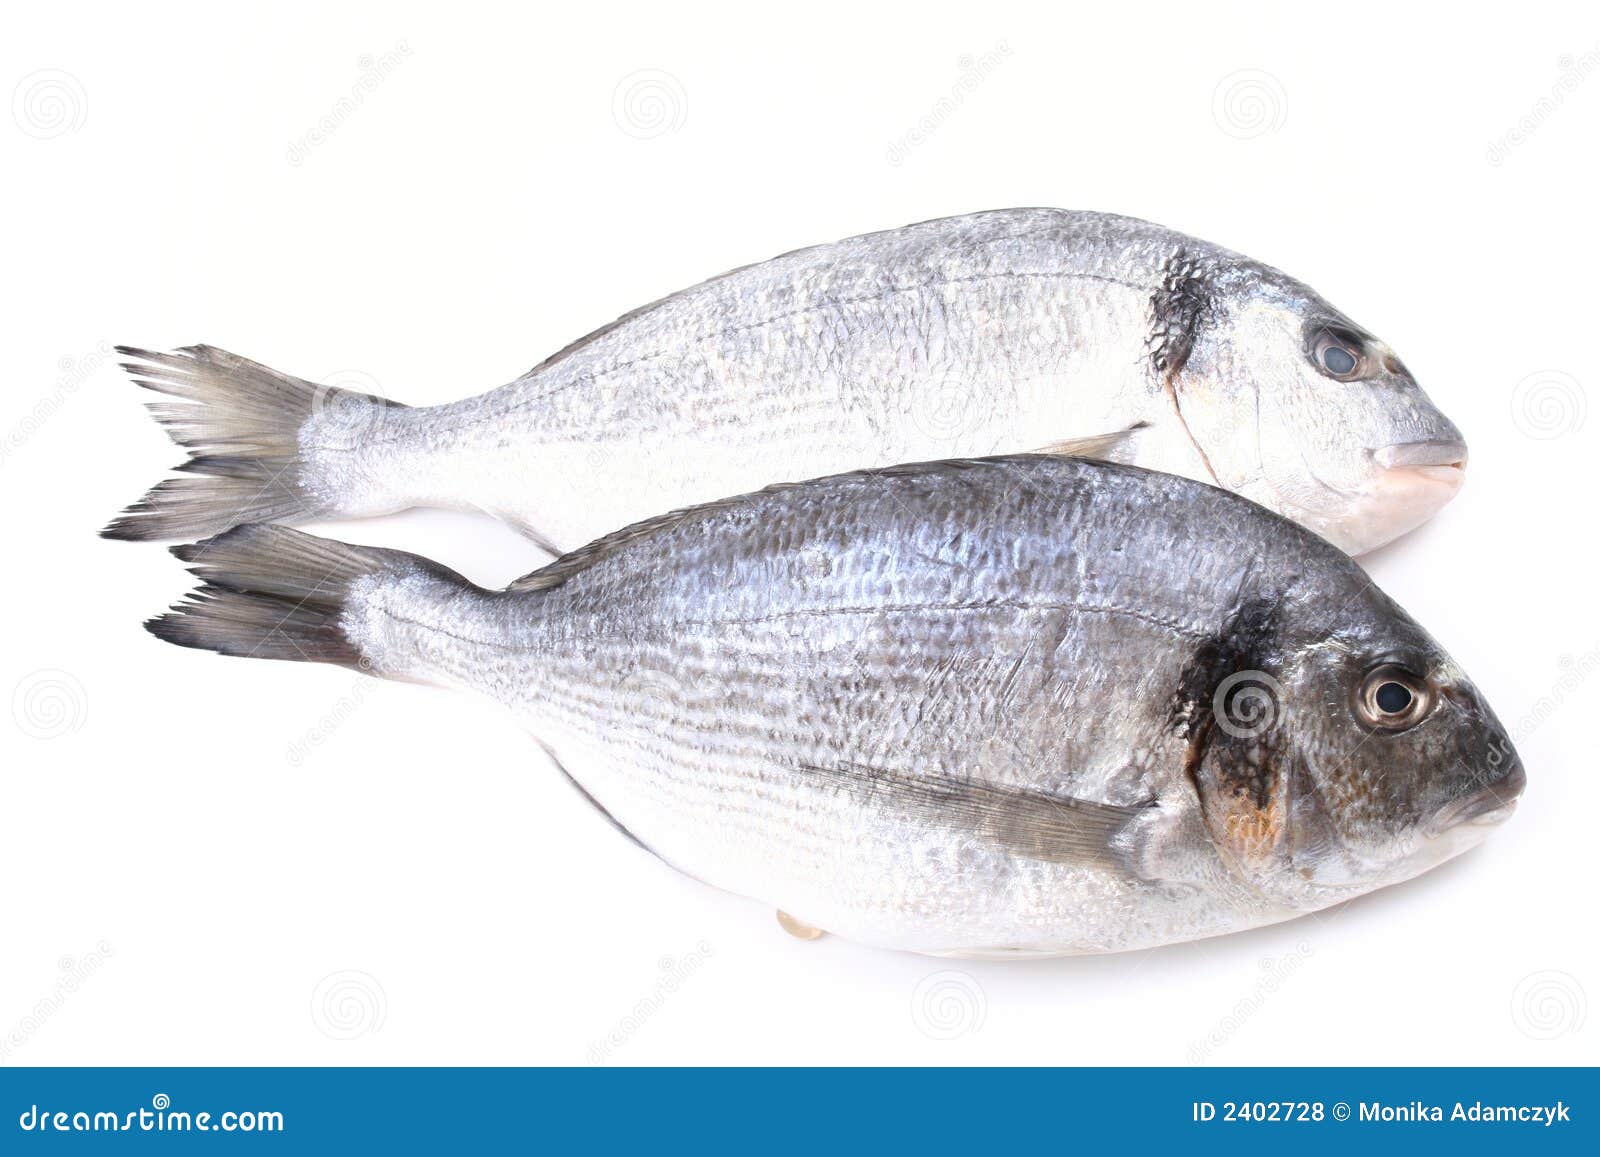 dorada fish